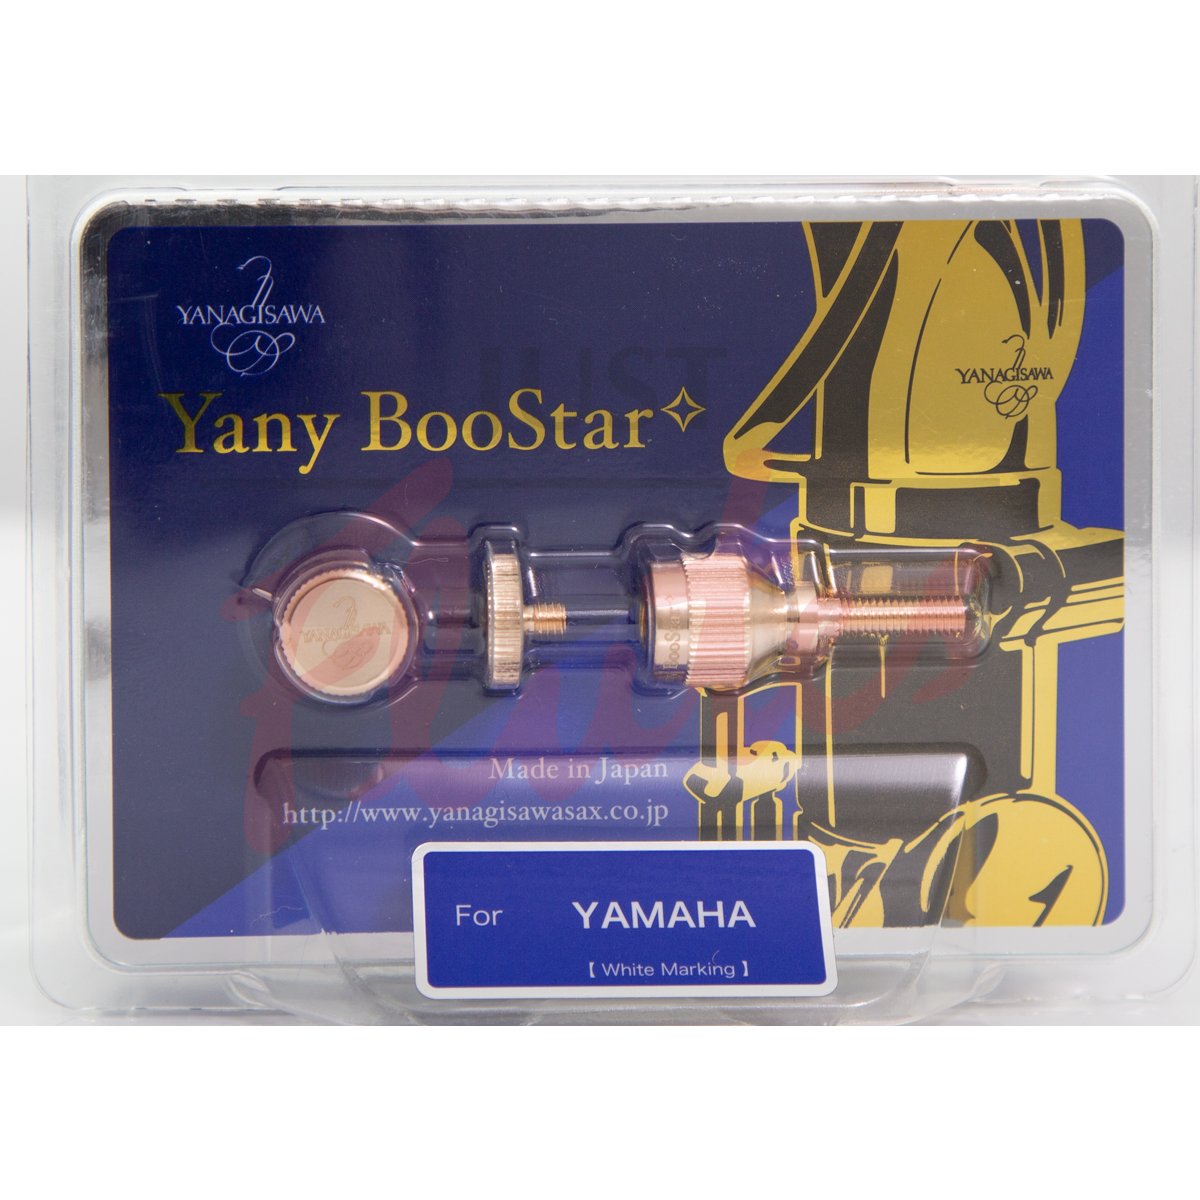 Yanagisawa "Yany" BooStar YBST6 Neck Screw Pink Gold-Plated - Yamaha